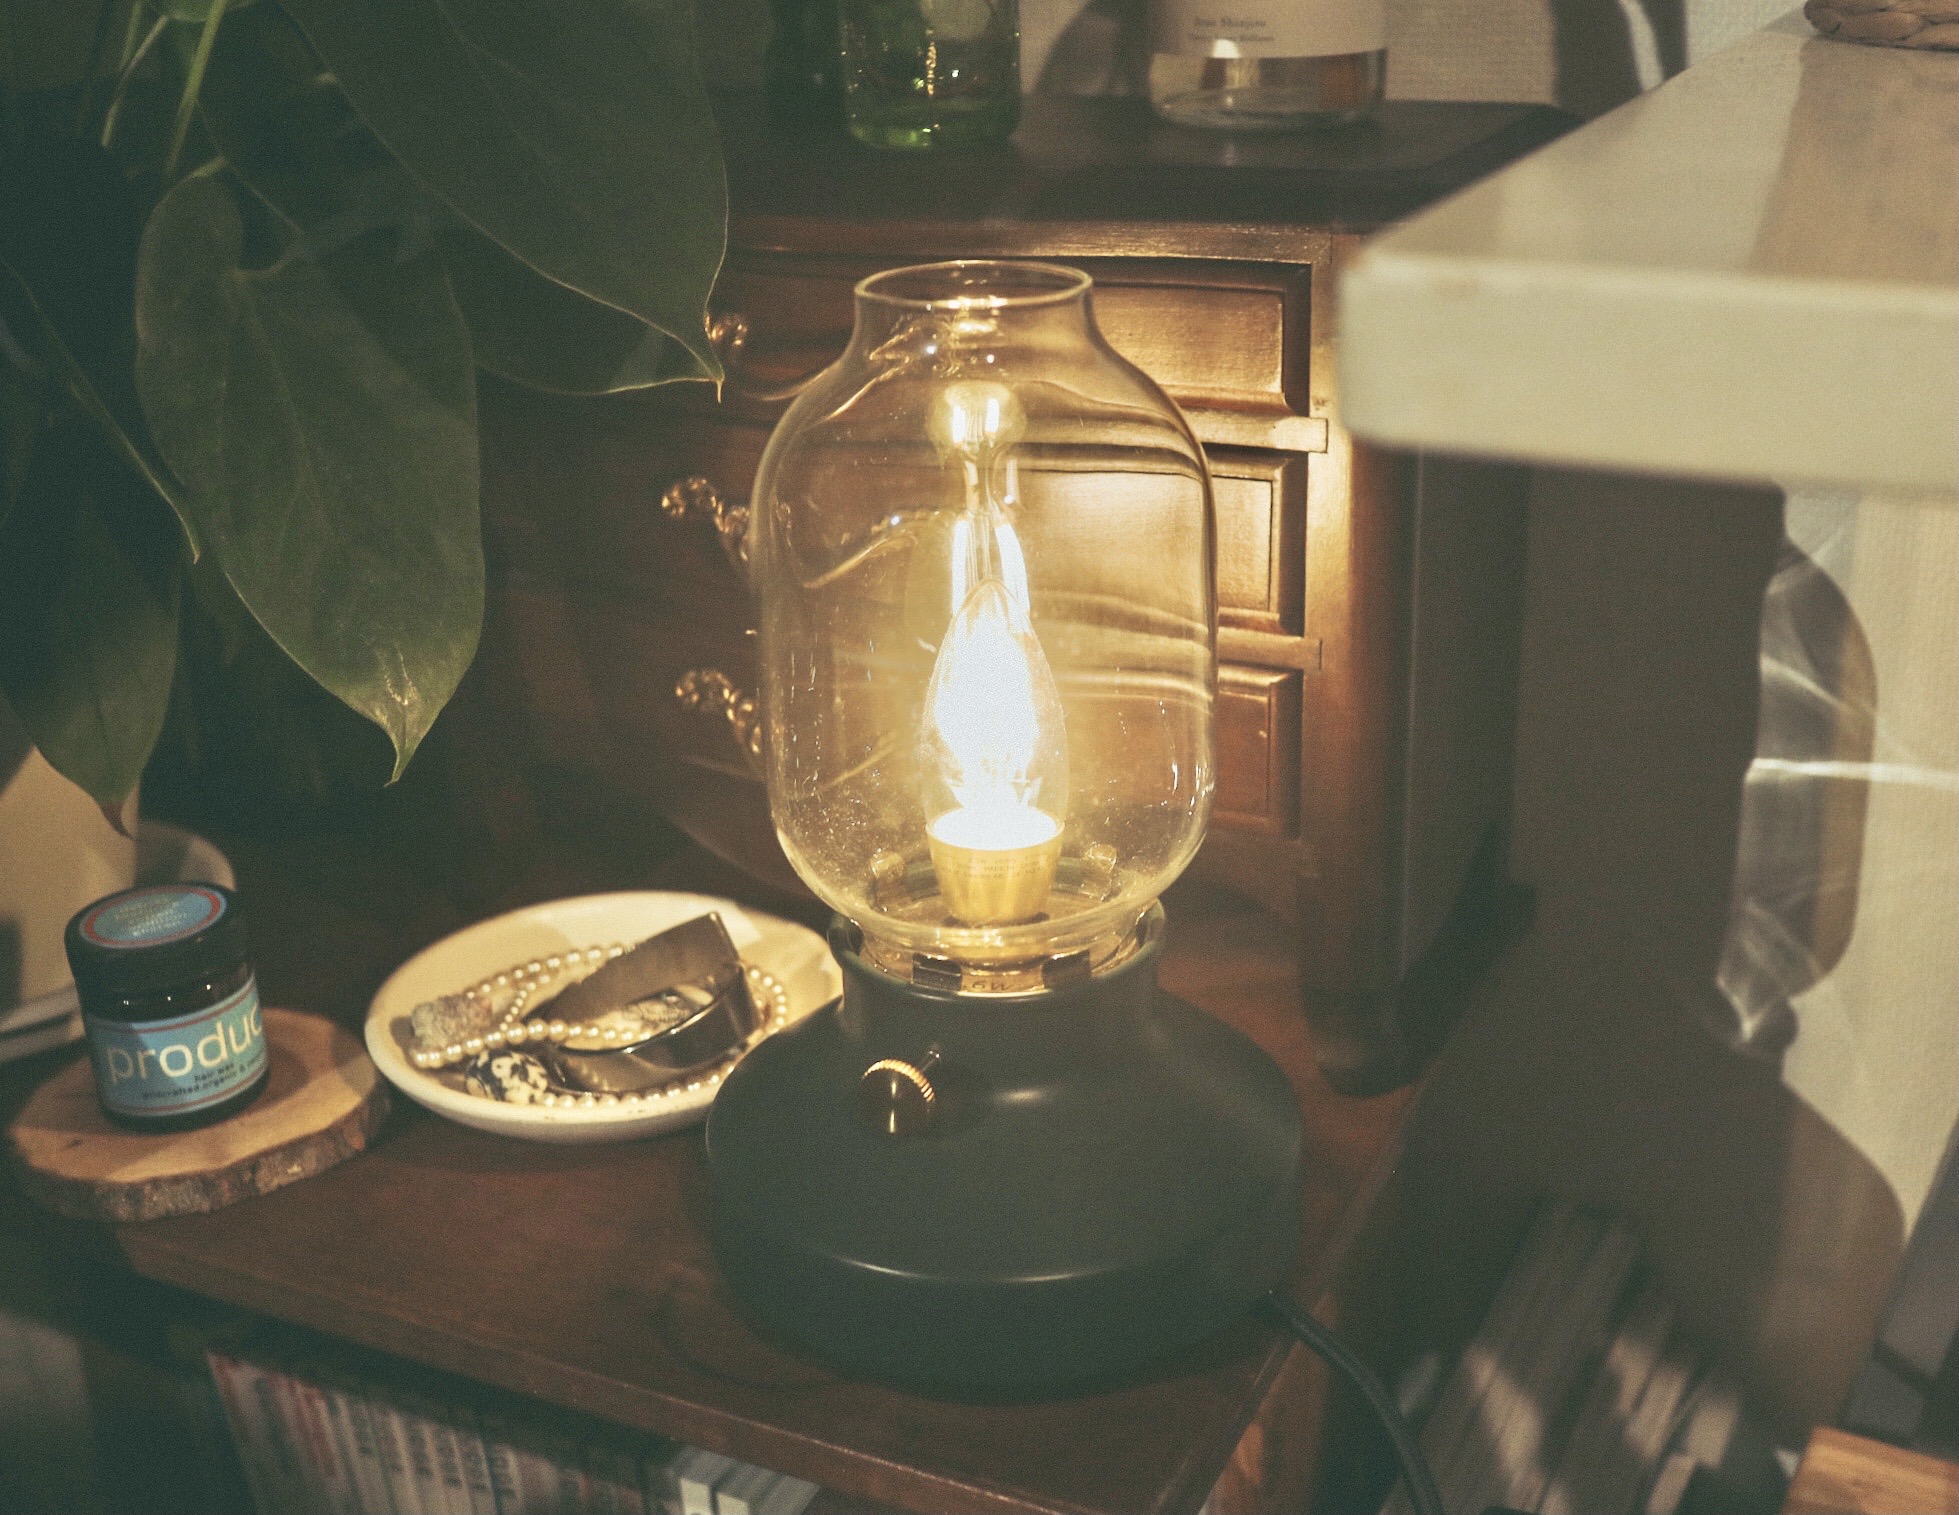 灯油ランプからインスピレーションを得たというIKEAのテーブルランプ「テールナビー」。3,000円ほどで購入可能です。つまみで明るさ調整できるのも嬉しいポイント。(このお部屋を見る)